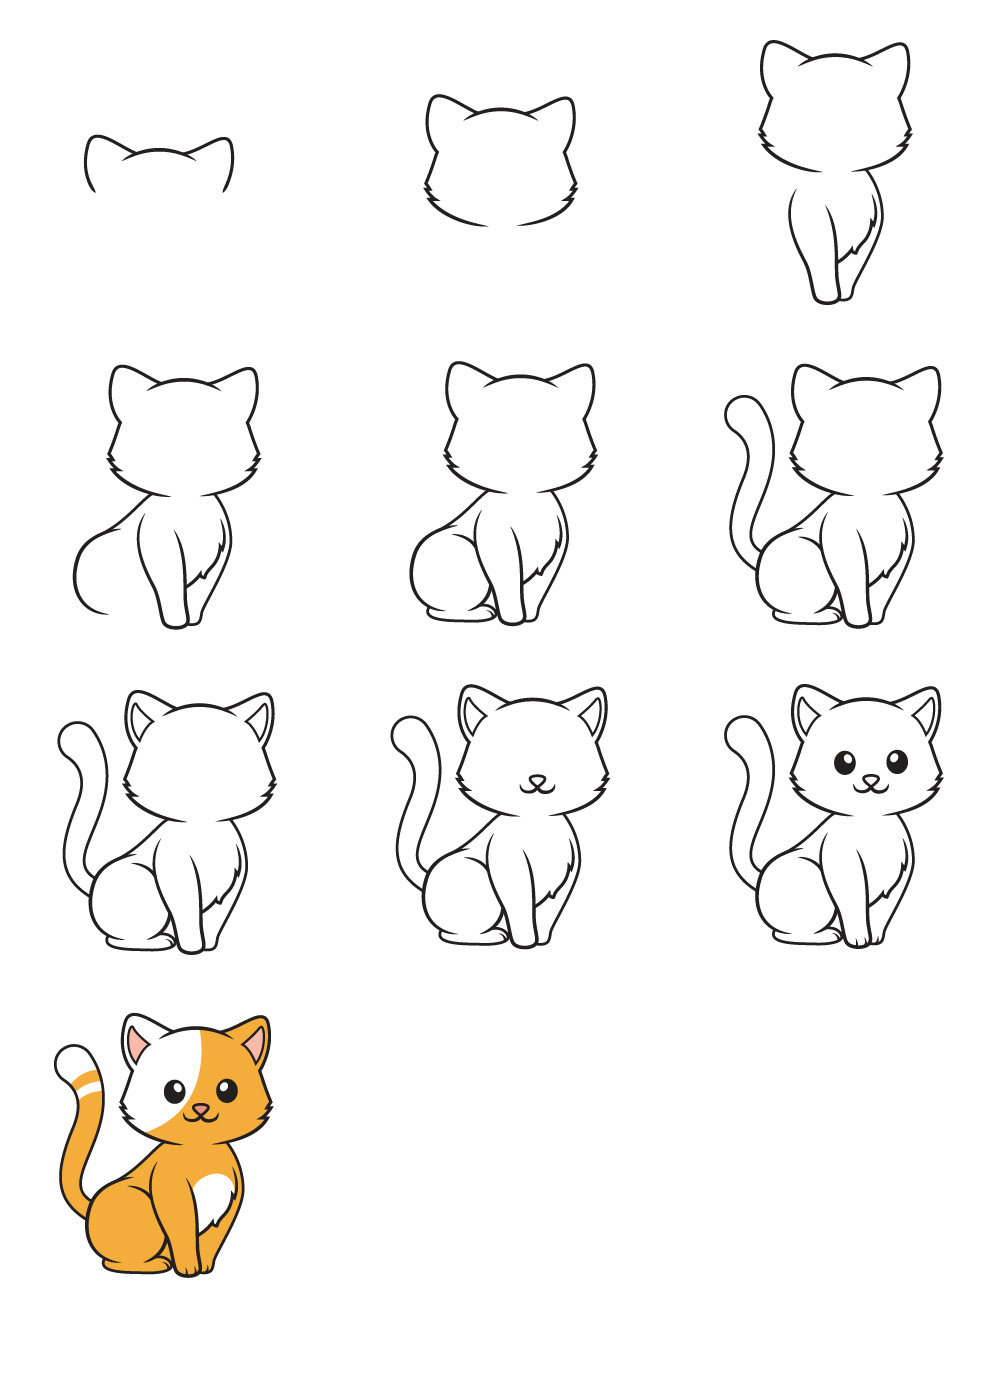 Xem hơn 48 ảnh về hình vẽ con mèo dễ thương - daotaonec